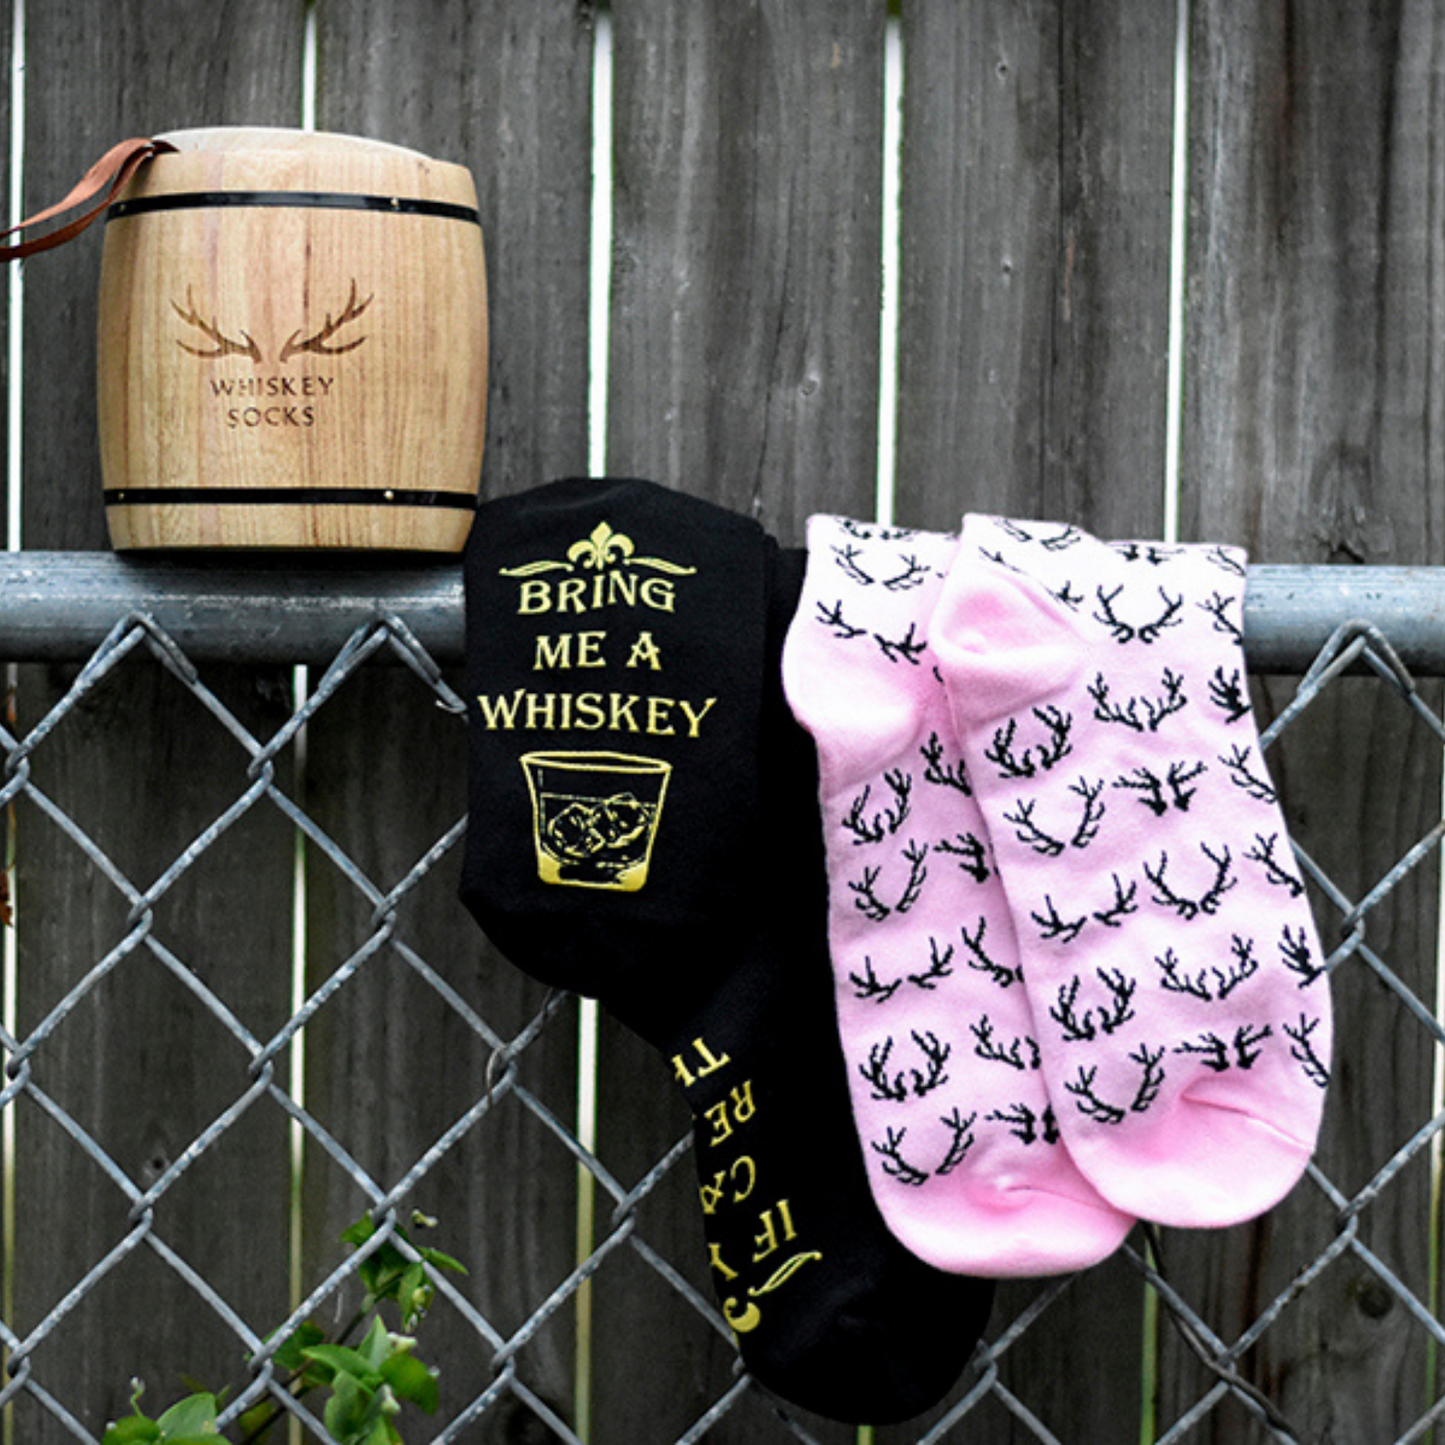 Lord's Rocks 2 Pair Pack of Whiskey Stones Socks in Genuine Wood Barrel. Black Verbiage Black Pink Pattern Novelty